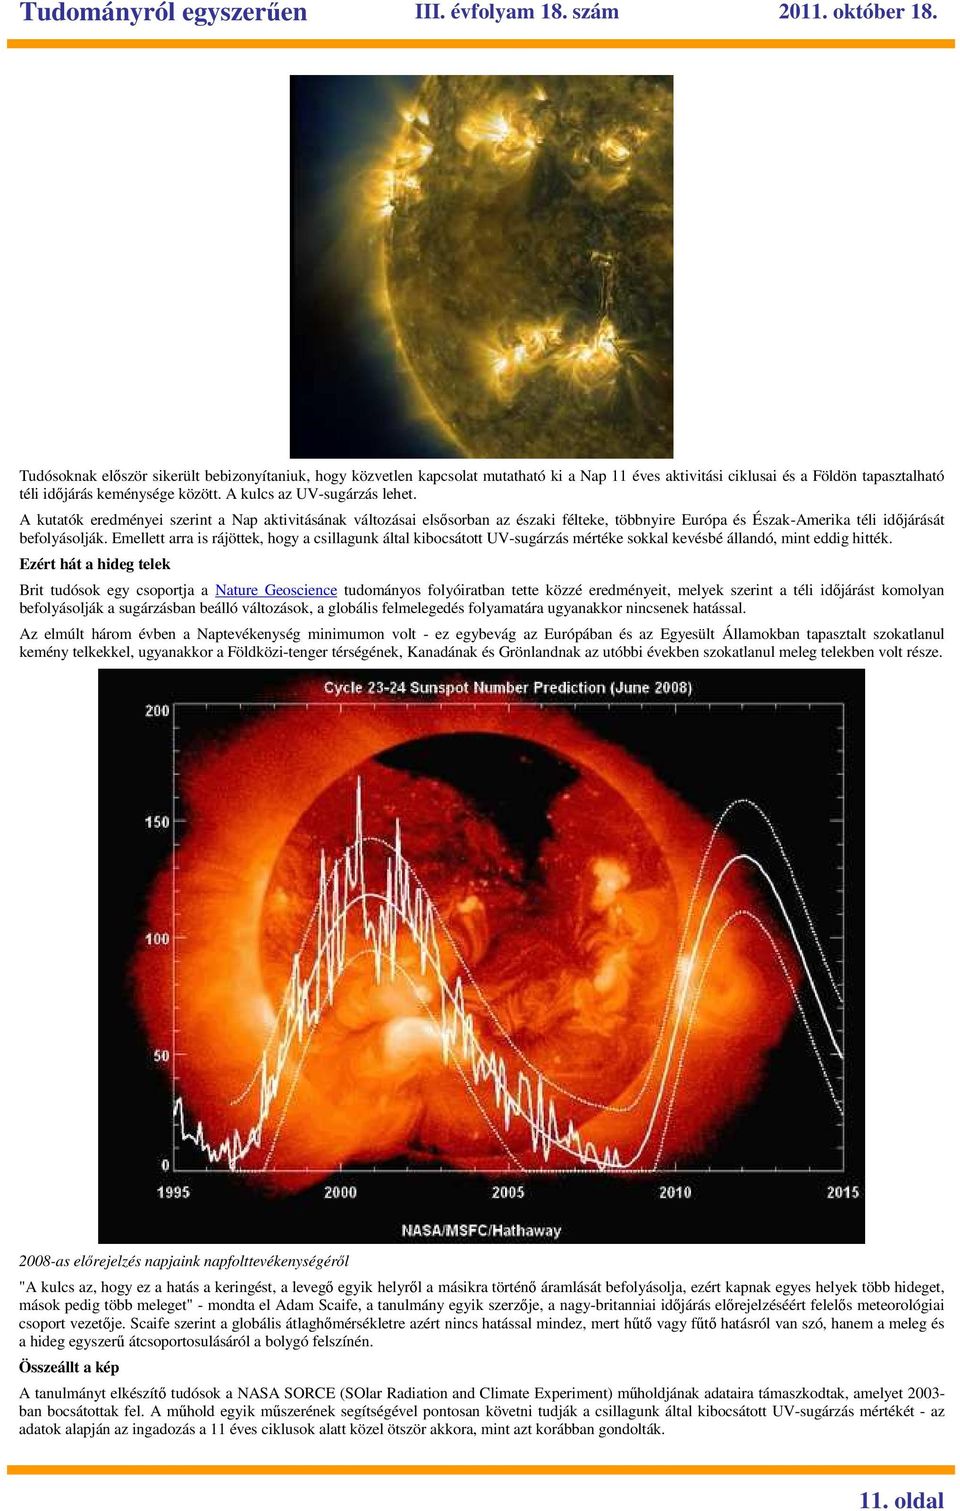 Emellett arra is rájöttek, hogy a csillagunk által kibocsátott UV-sugárzás mértéke sokkal kevésbé állandó, mint eddig hitték.